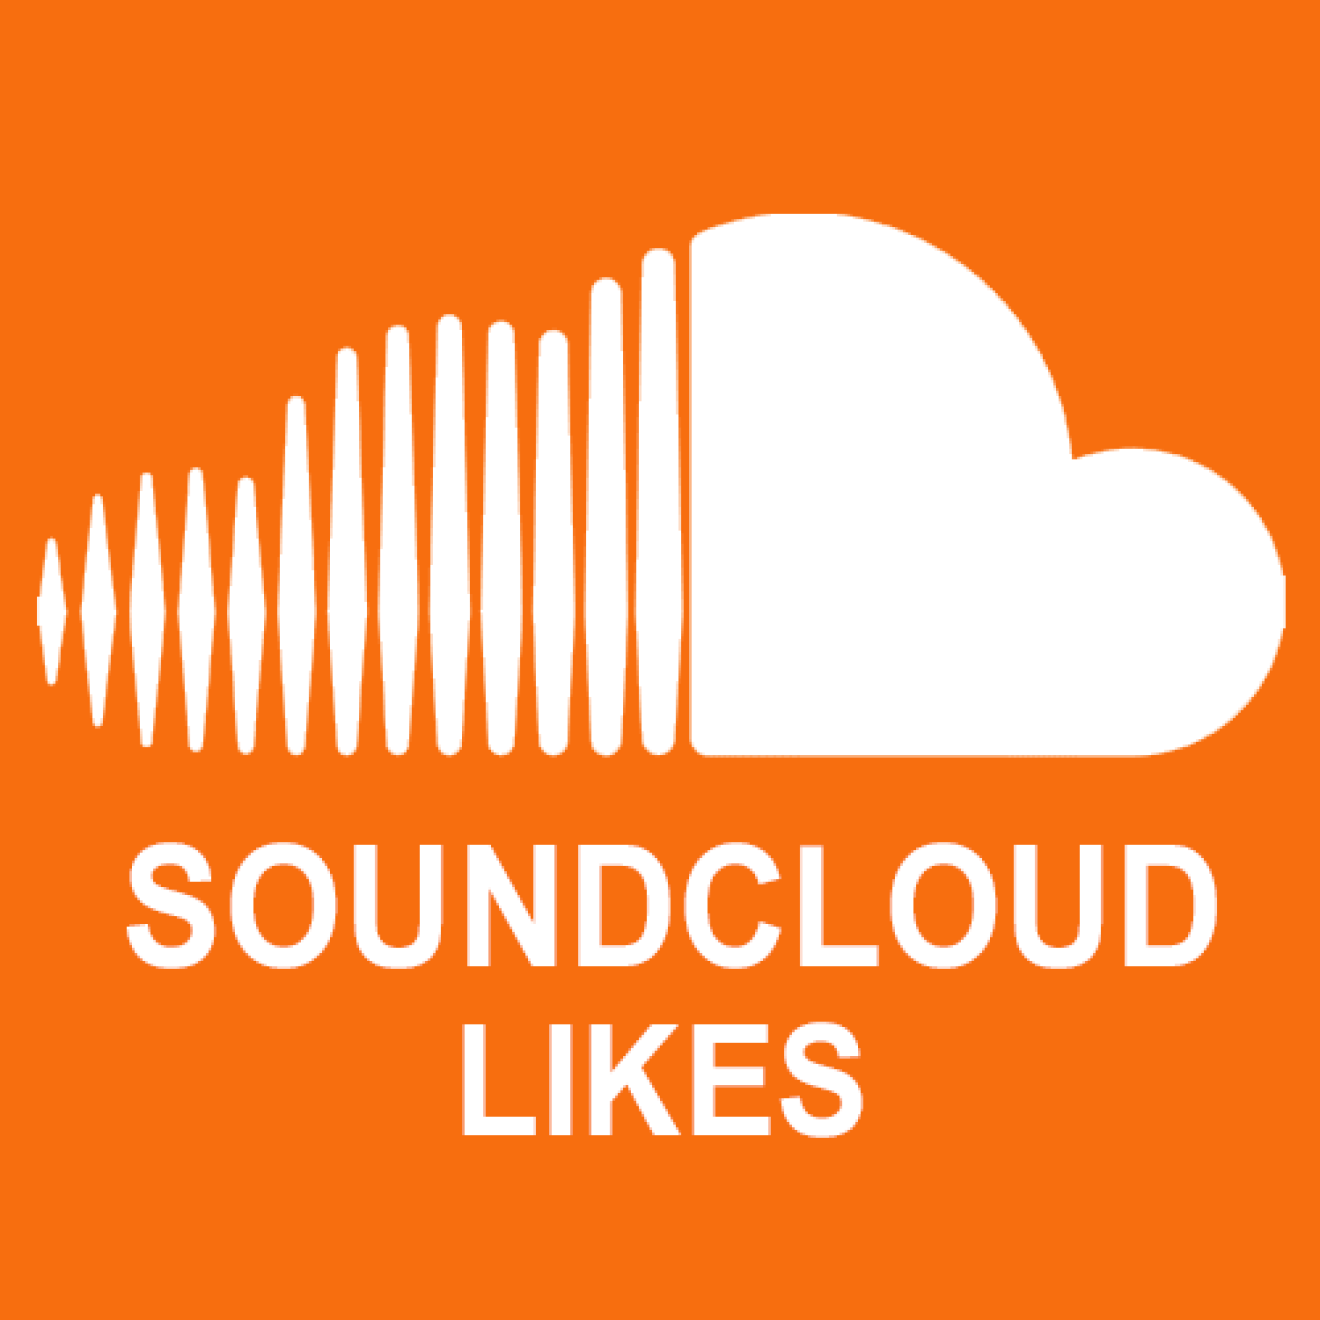 30000 Soundcloud Likes / Gefällt mir Angaben für Dich